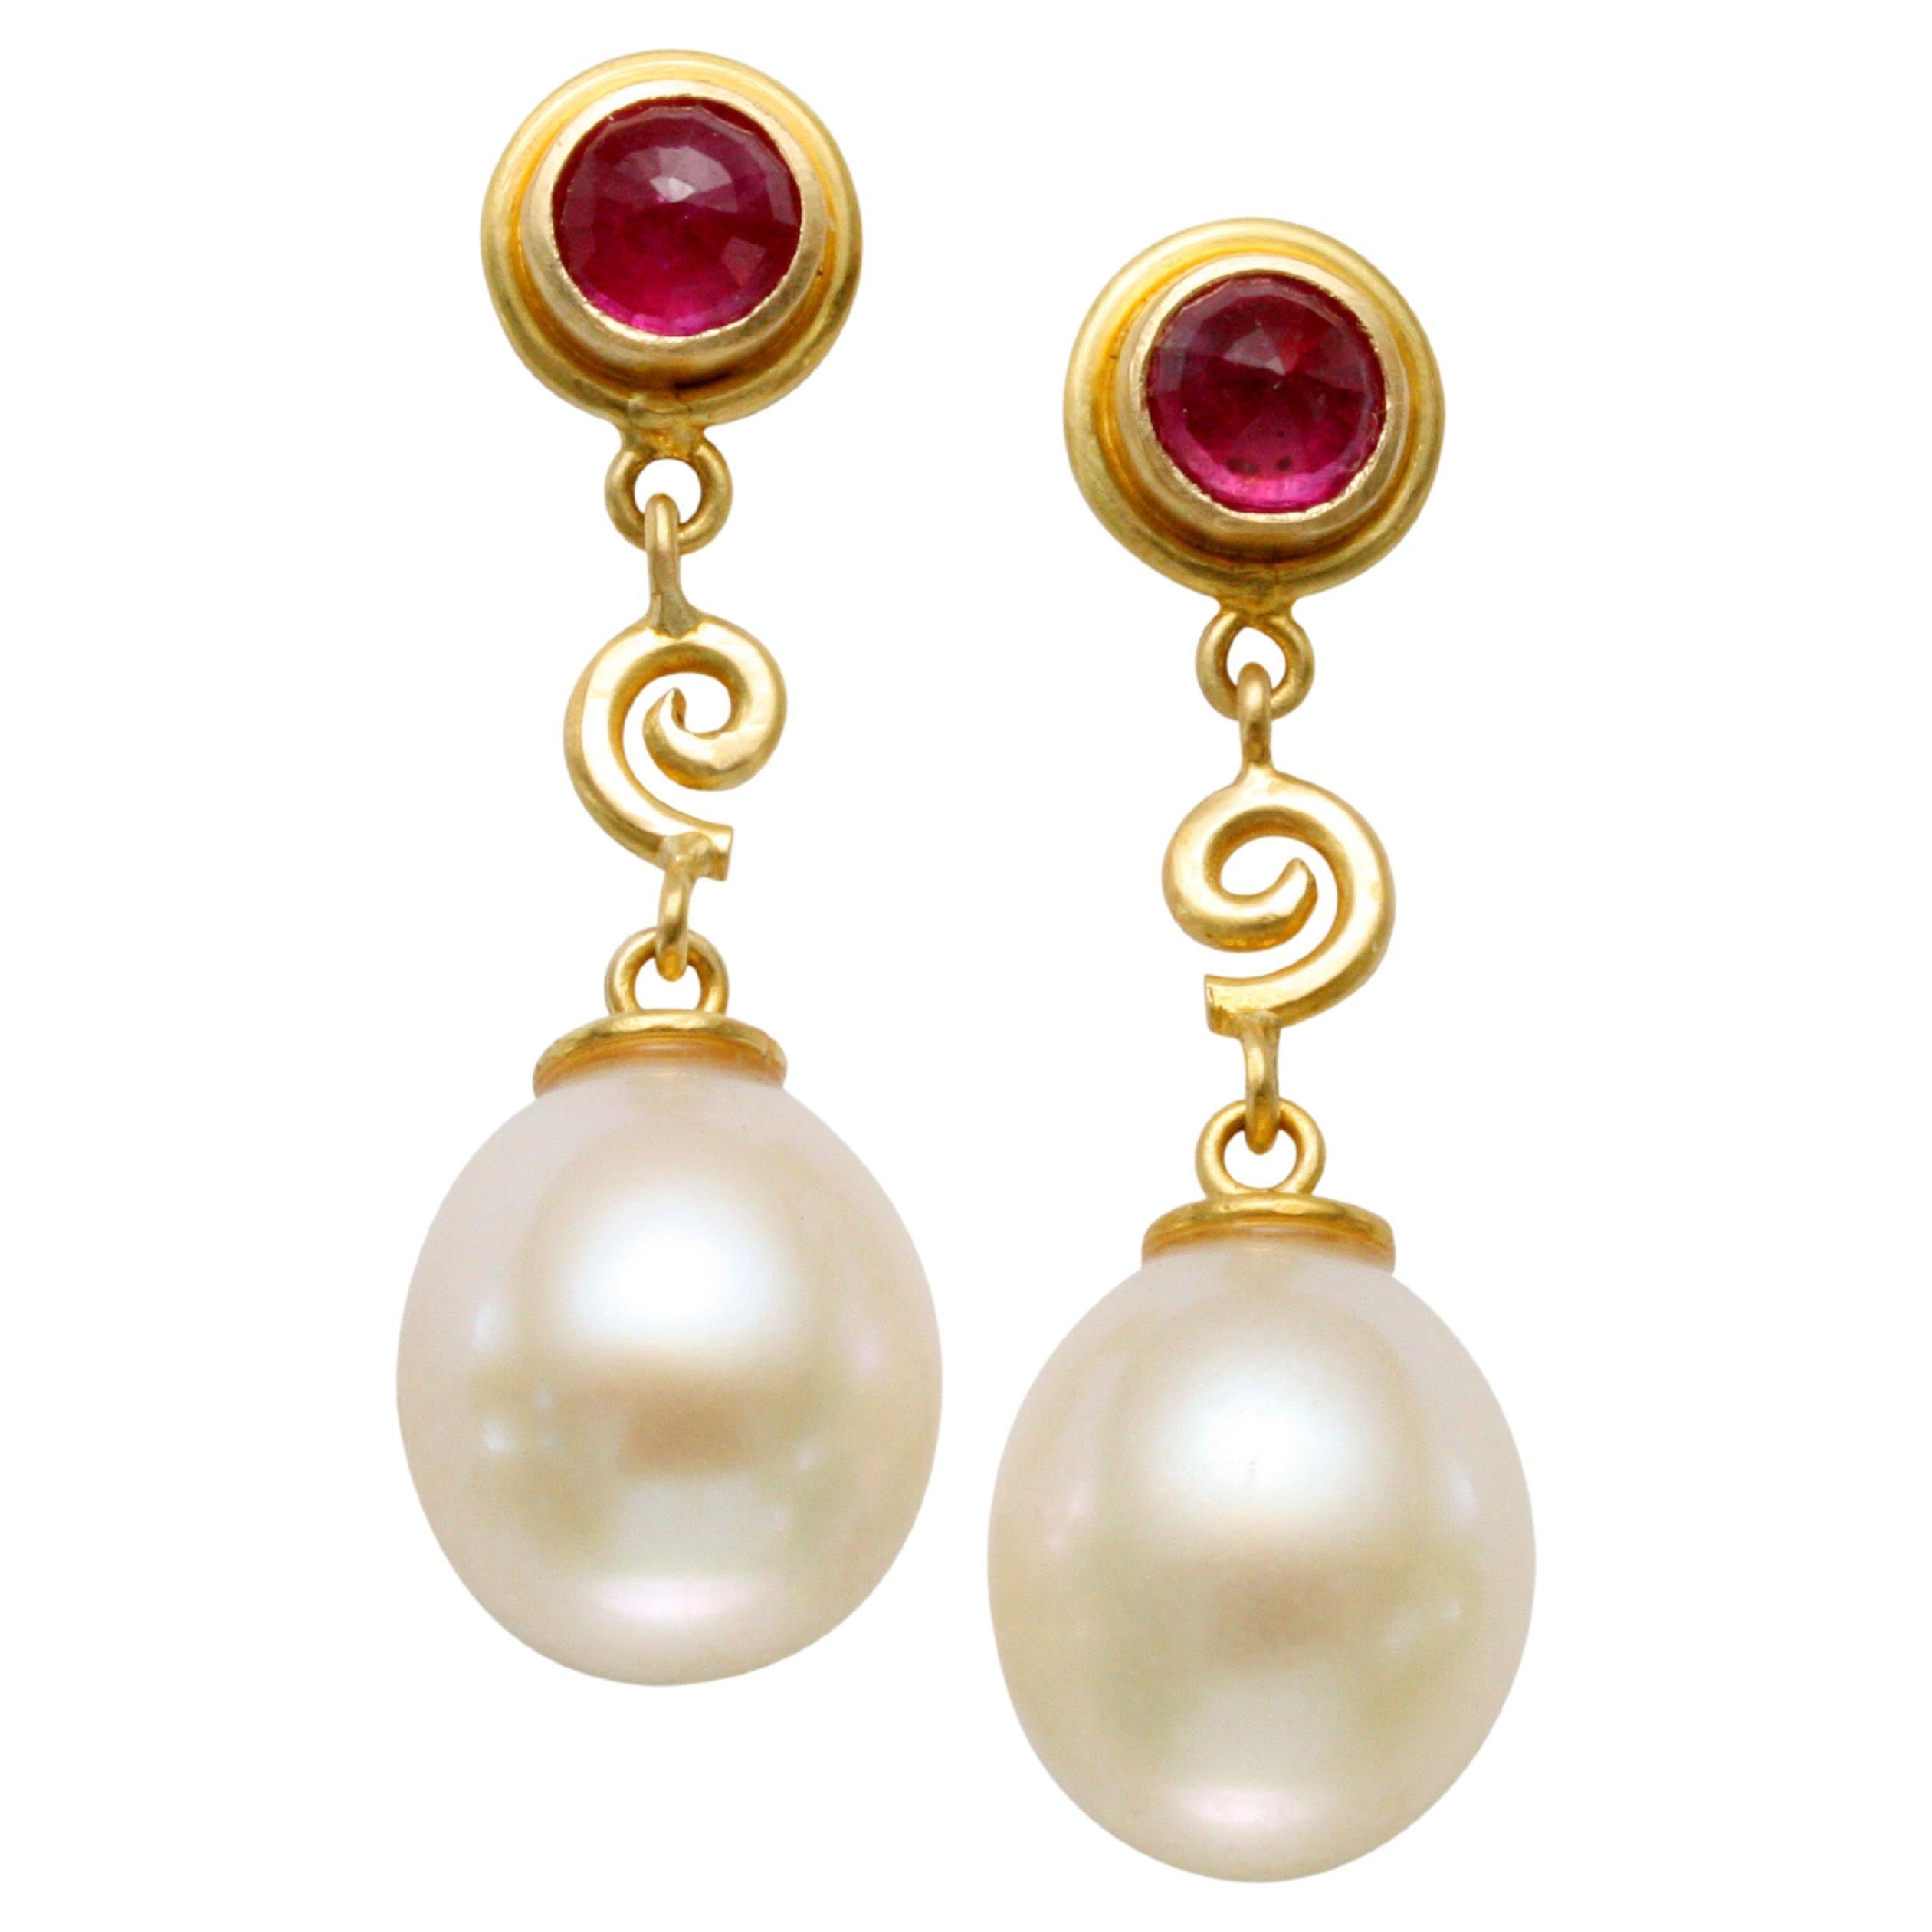 Steven Battelle Boucles d'oreilles en or 18 carats avec perles blanches et rubis